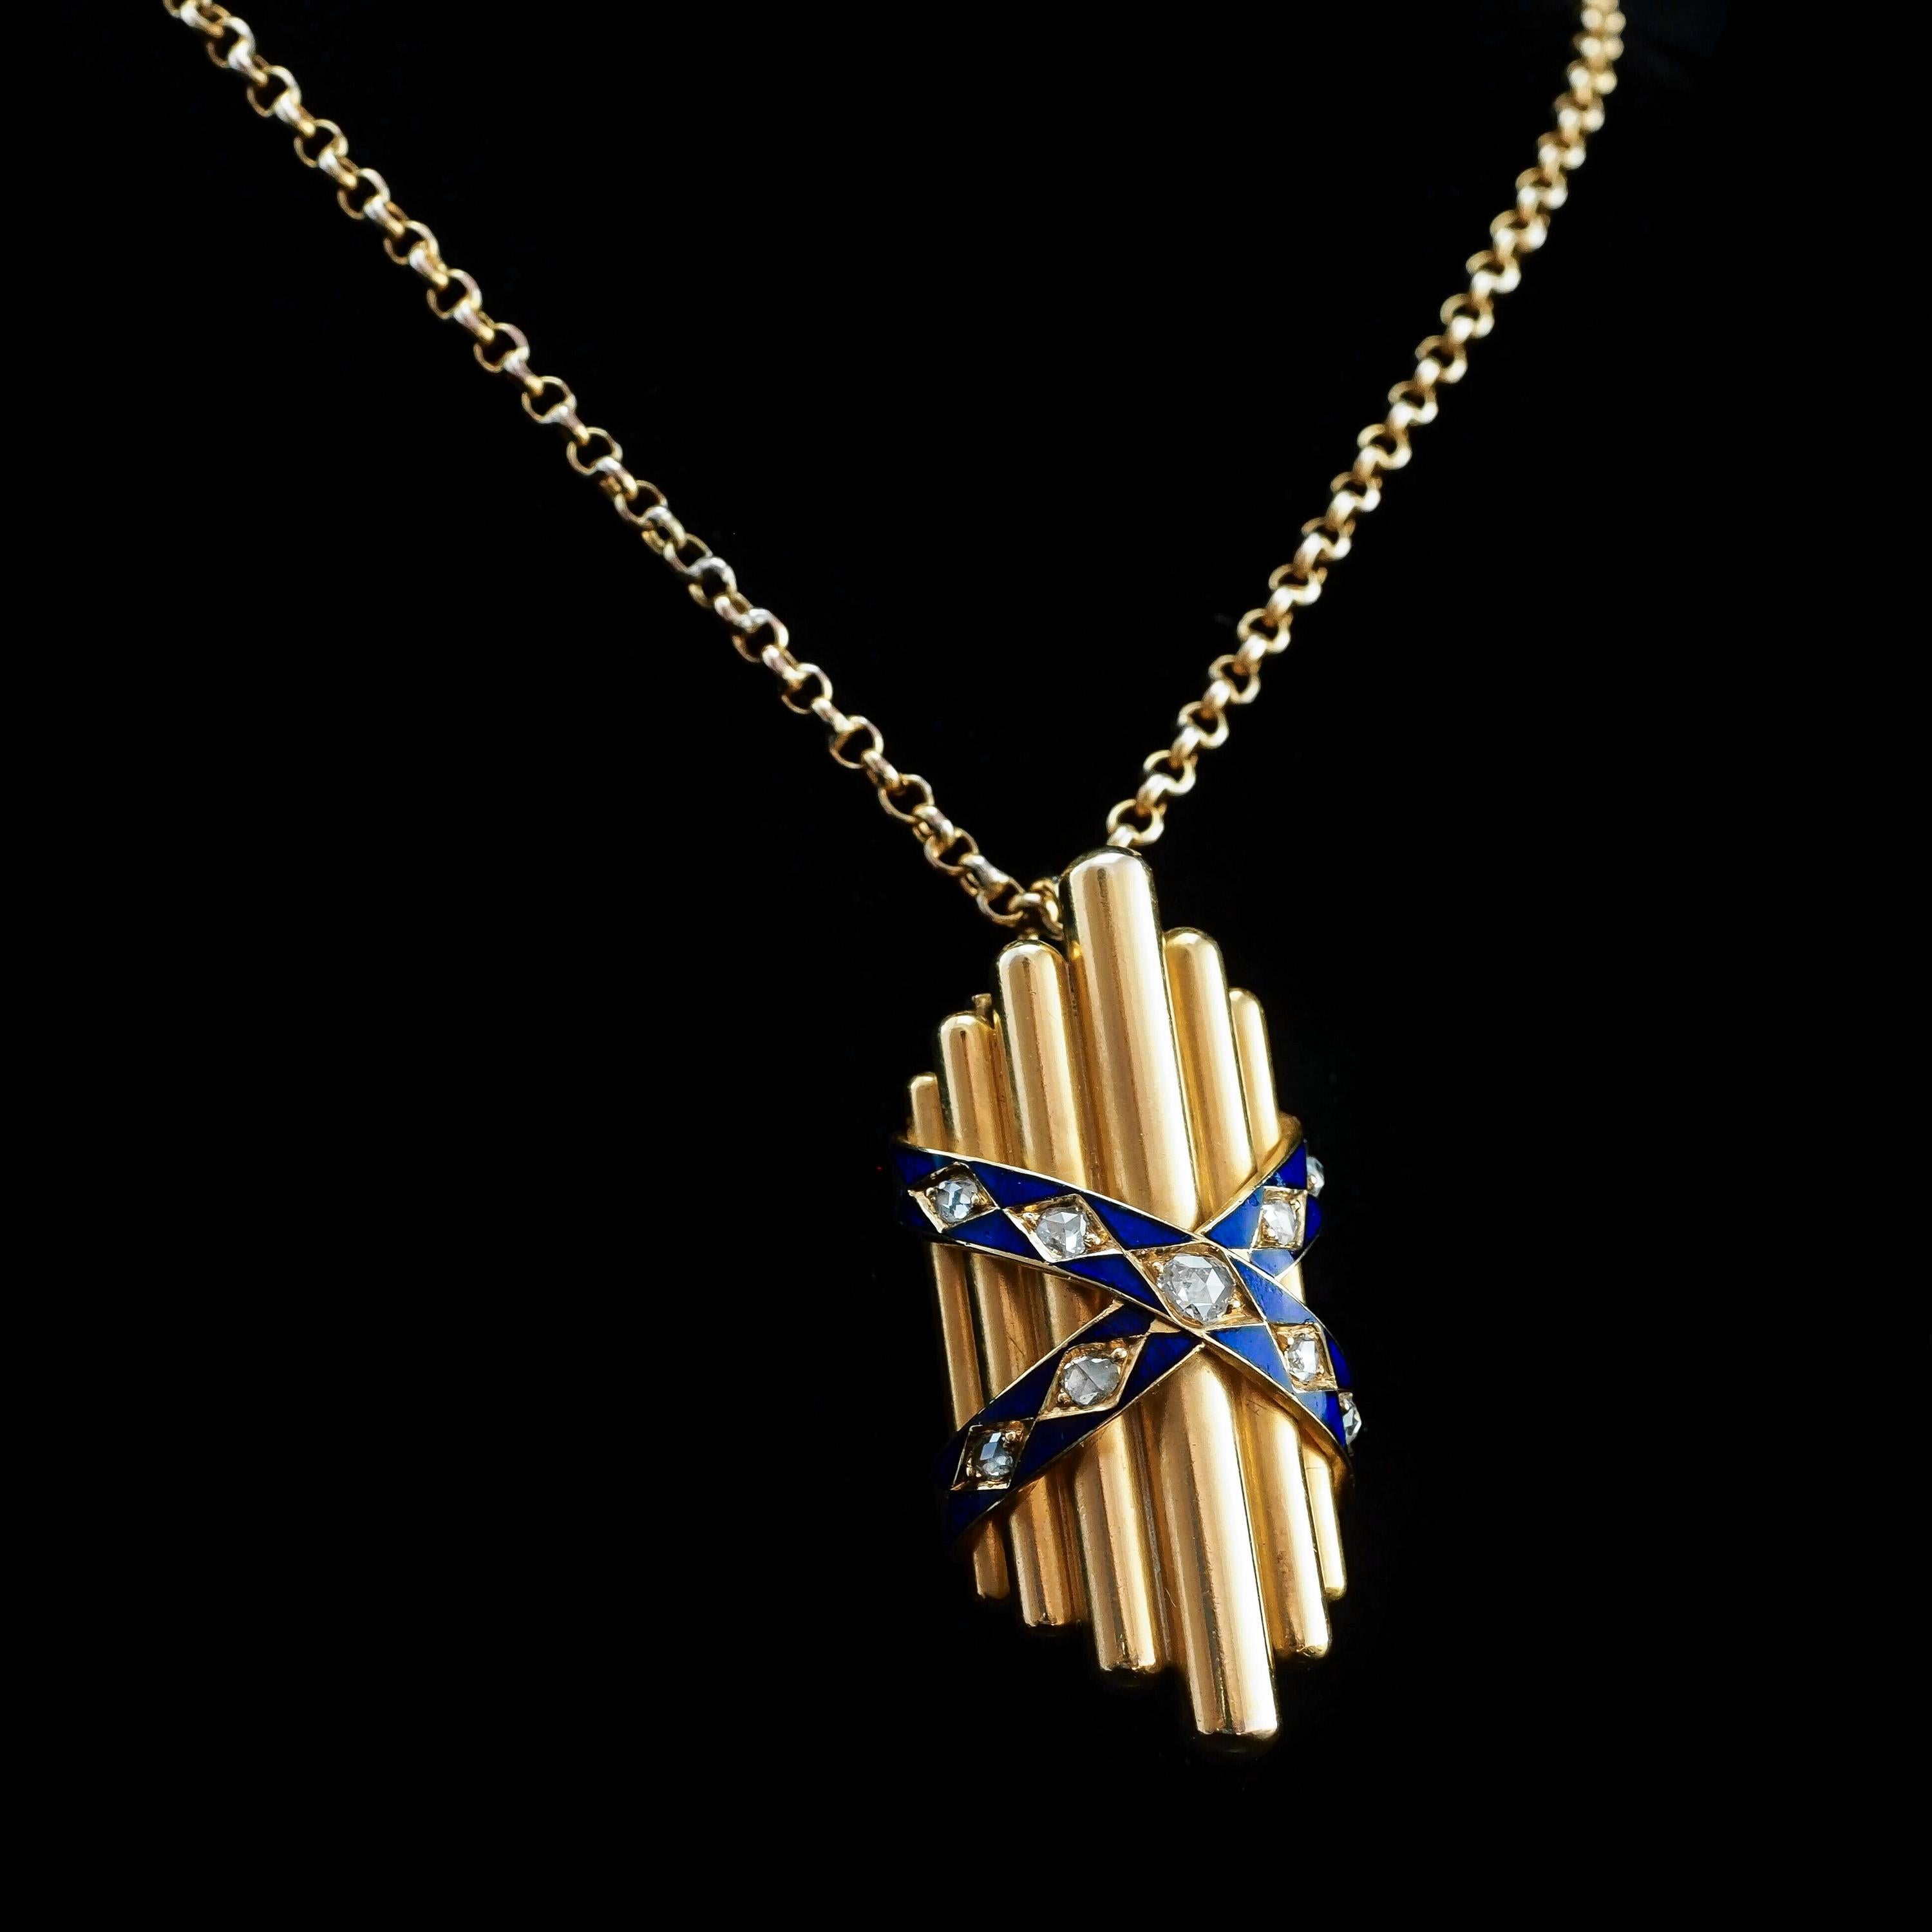 Antique 18K Gold Diamond Rose Cut Pendant Necklace with Blue Enamel - c.1880 For Sale 1